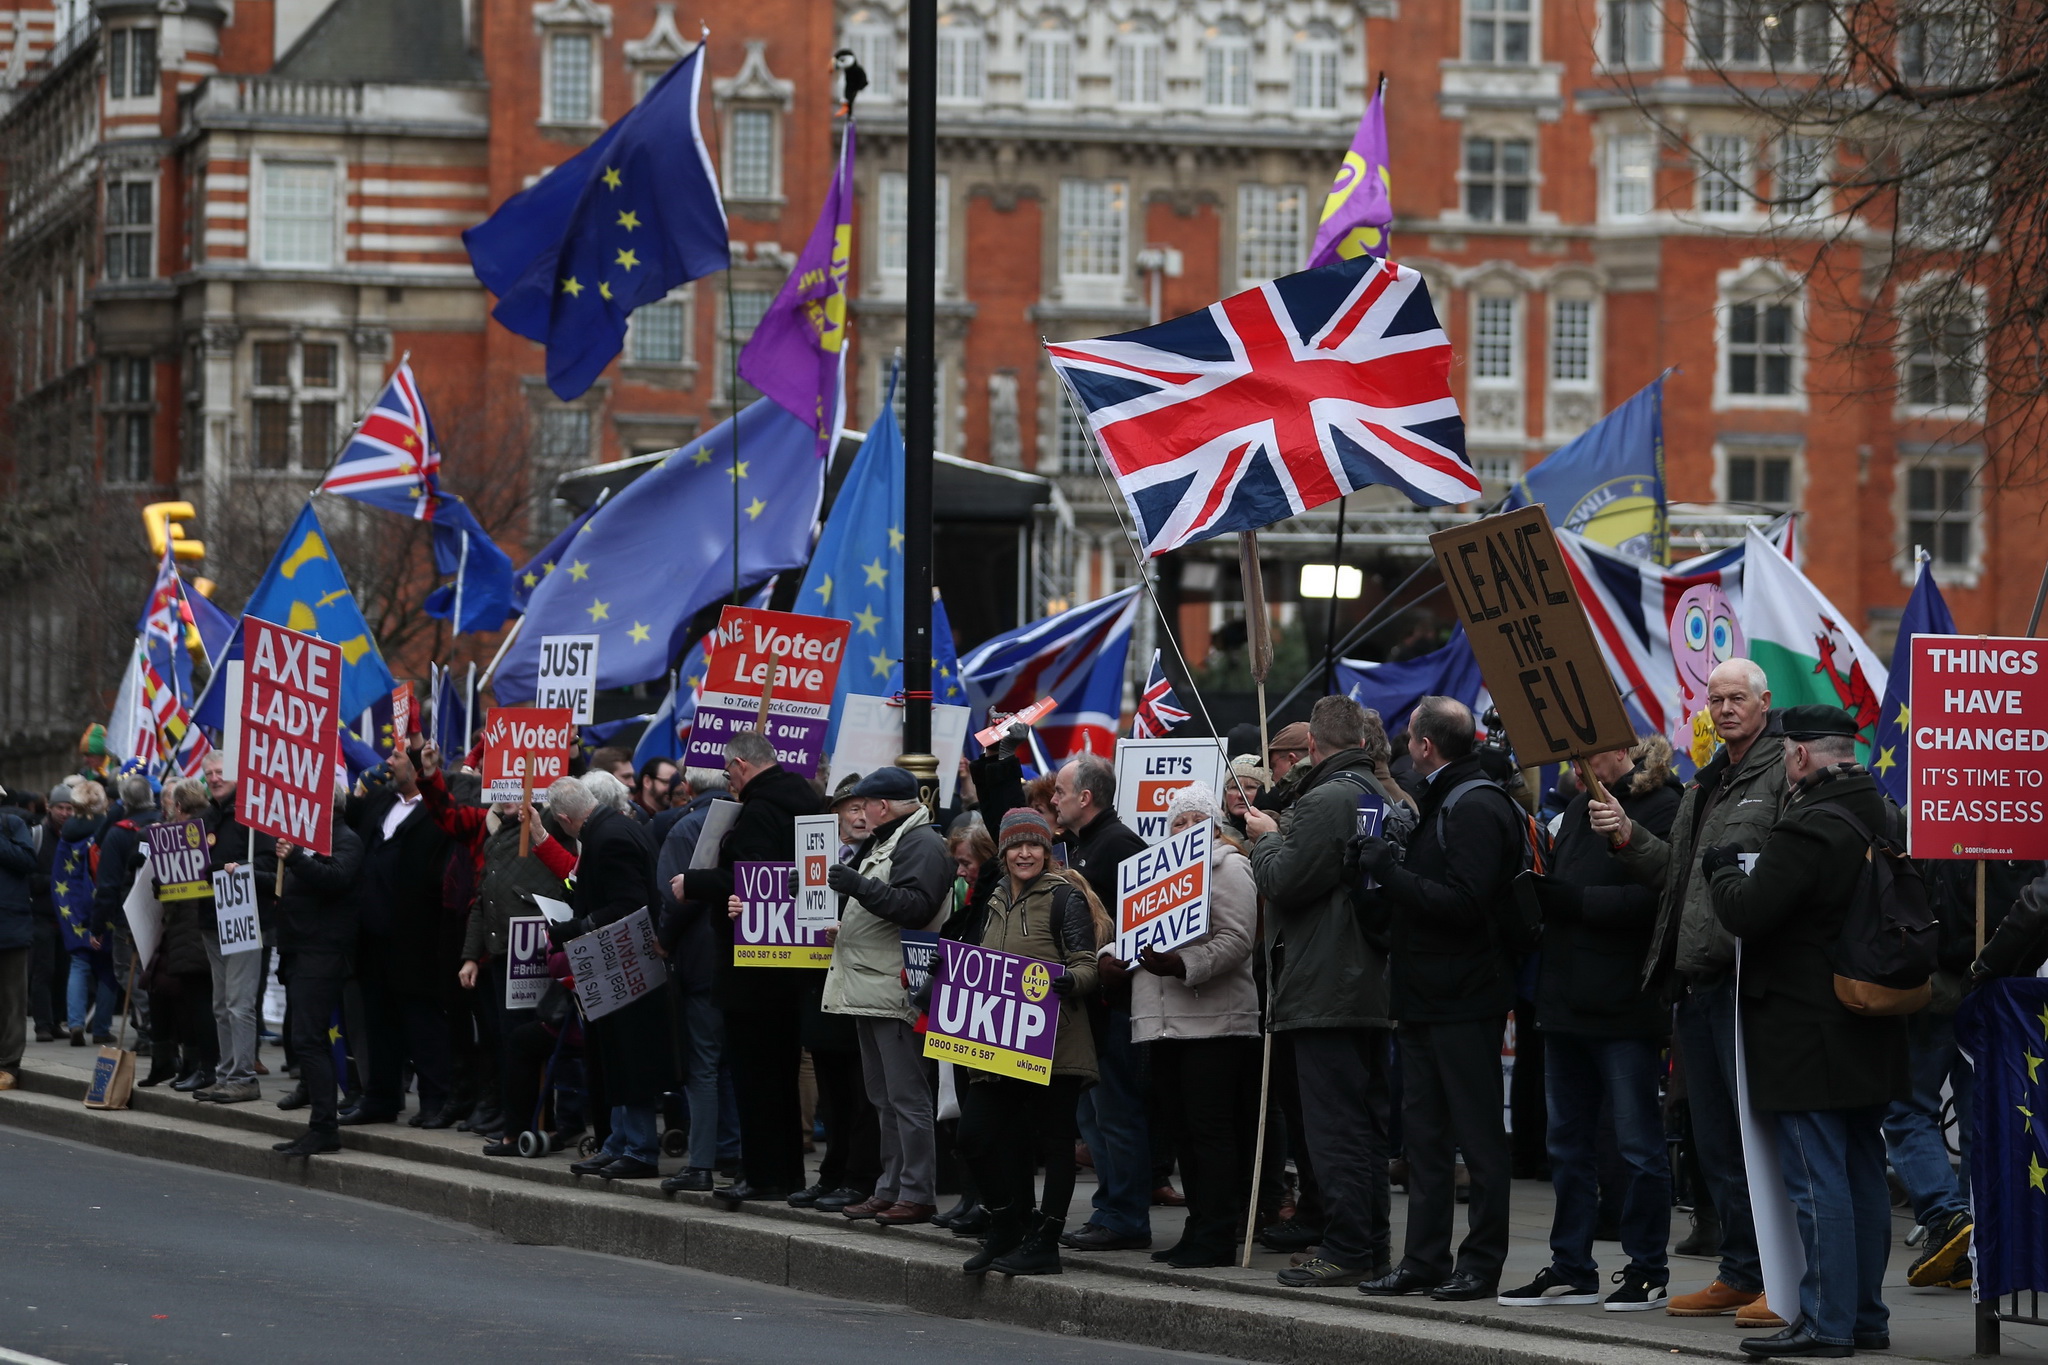 Những người ủng hộ và phản đối Brexit tuần hành bên ngoài Hạ viện Anh tại thủ đô London, ngày 15/1/2019. (Ảnh: THX/TTXVN)